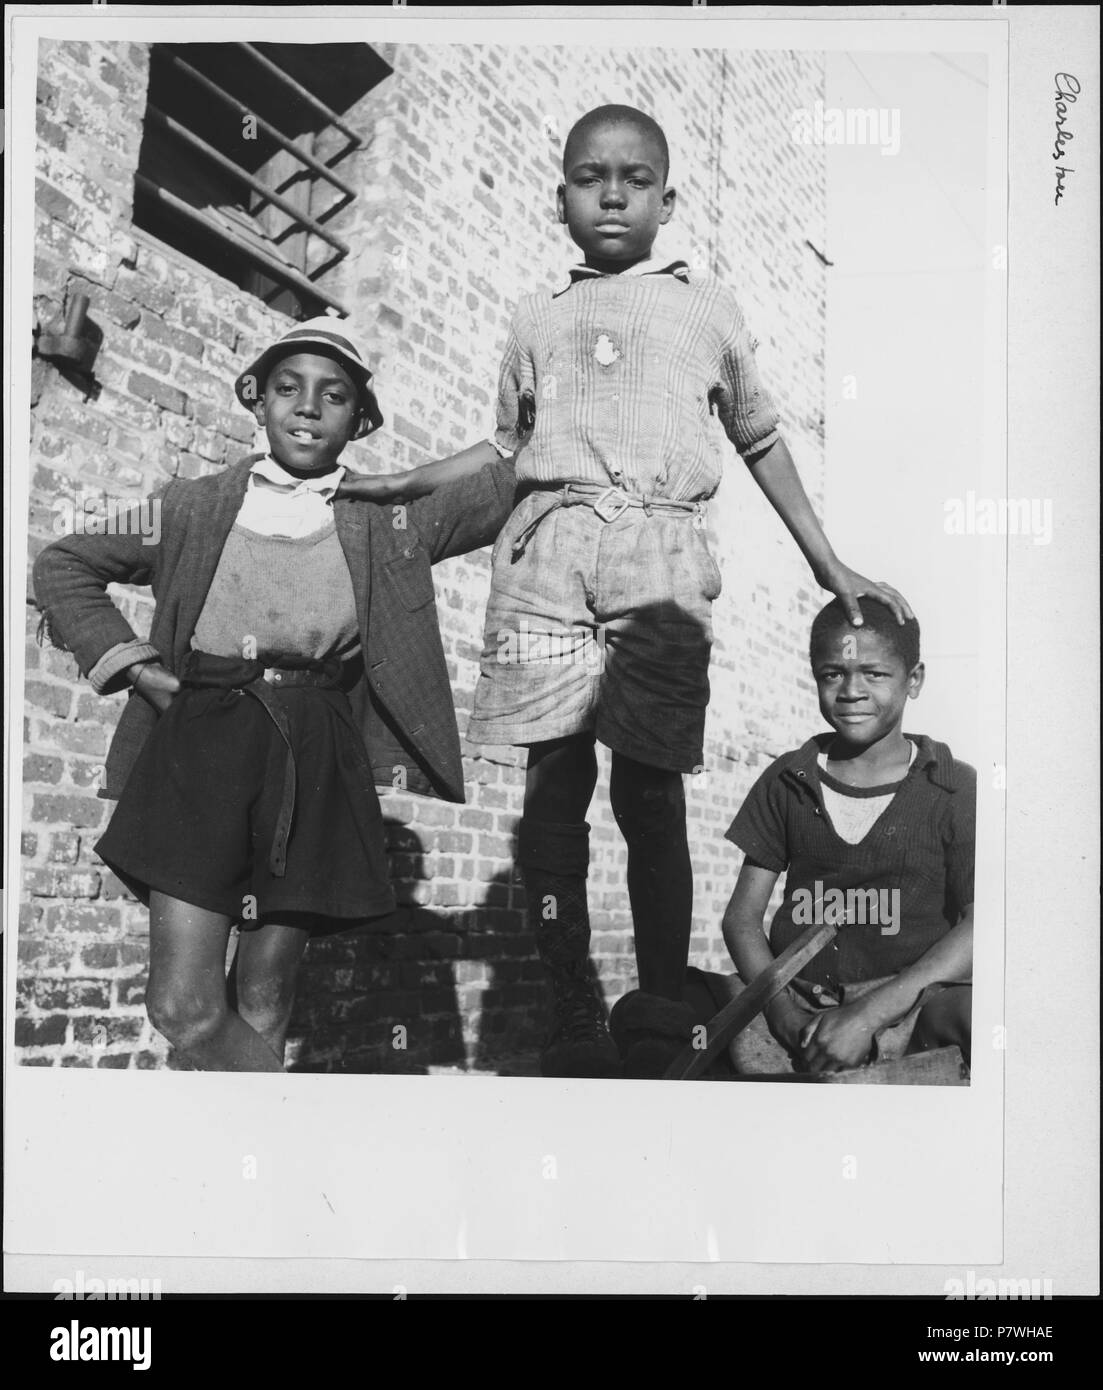 Stati Uniti d'America, Charleston/SC: Menschen; Drei Jungen vor einer Backsteinmauer. Dal 1936 fino al 1938 85 CH-NB - USA, Charleston-SC- Menschen - Annemarie Schwarzenbach - SLA-Schwarzenbach-UN-5-11-186 Foto Stock